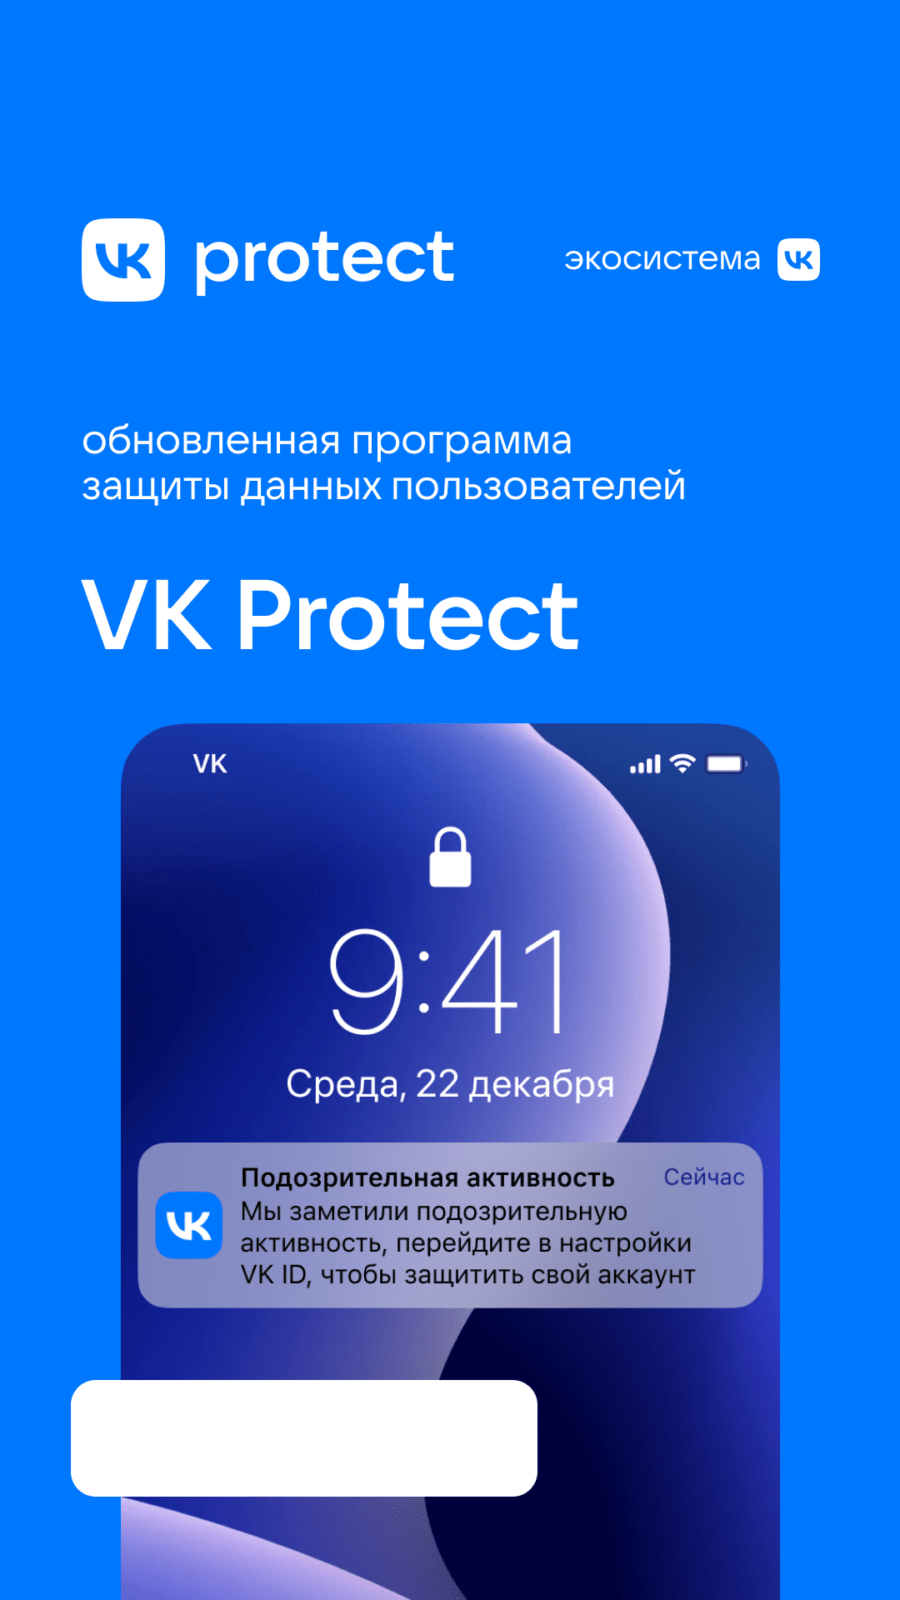 VK запускает обновленную программу защиты данных пользователей — VK Protect (protect storiz)